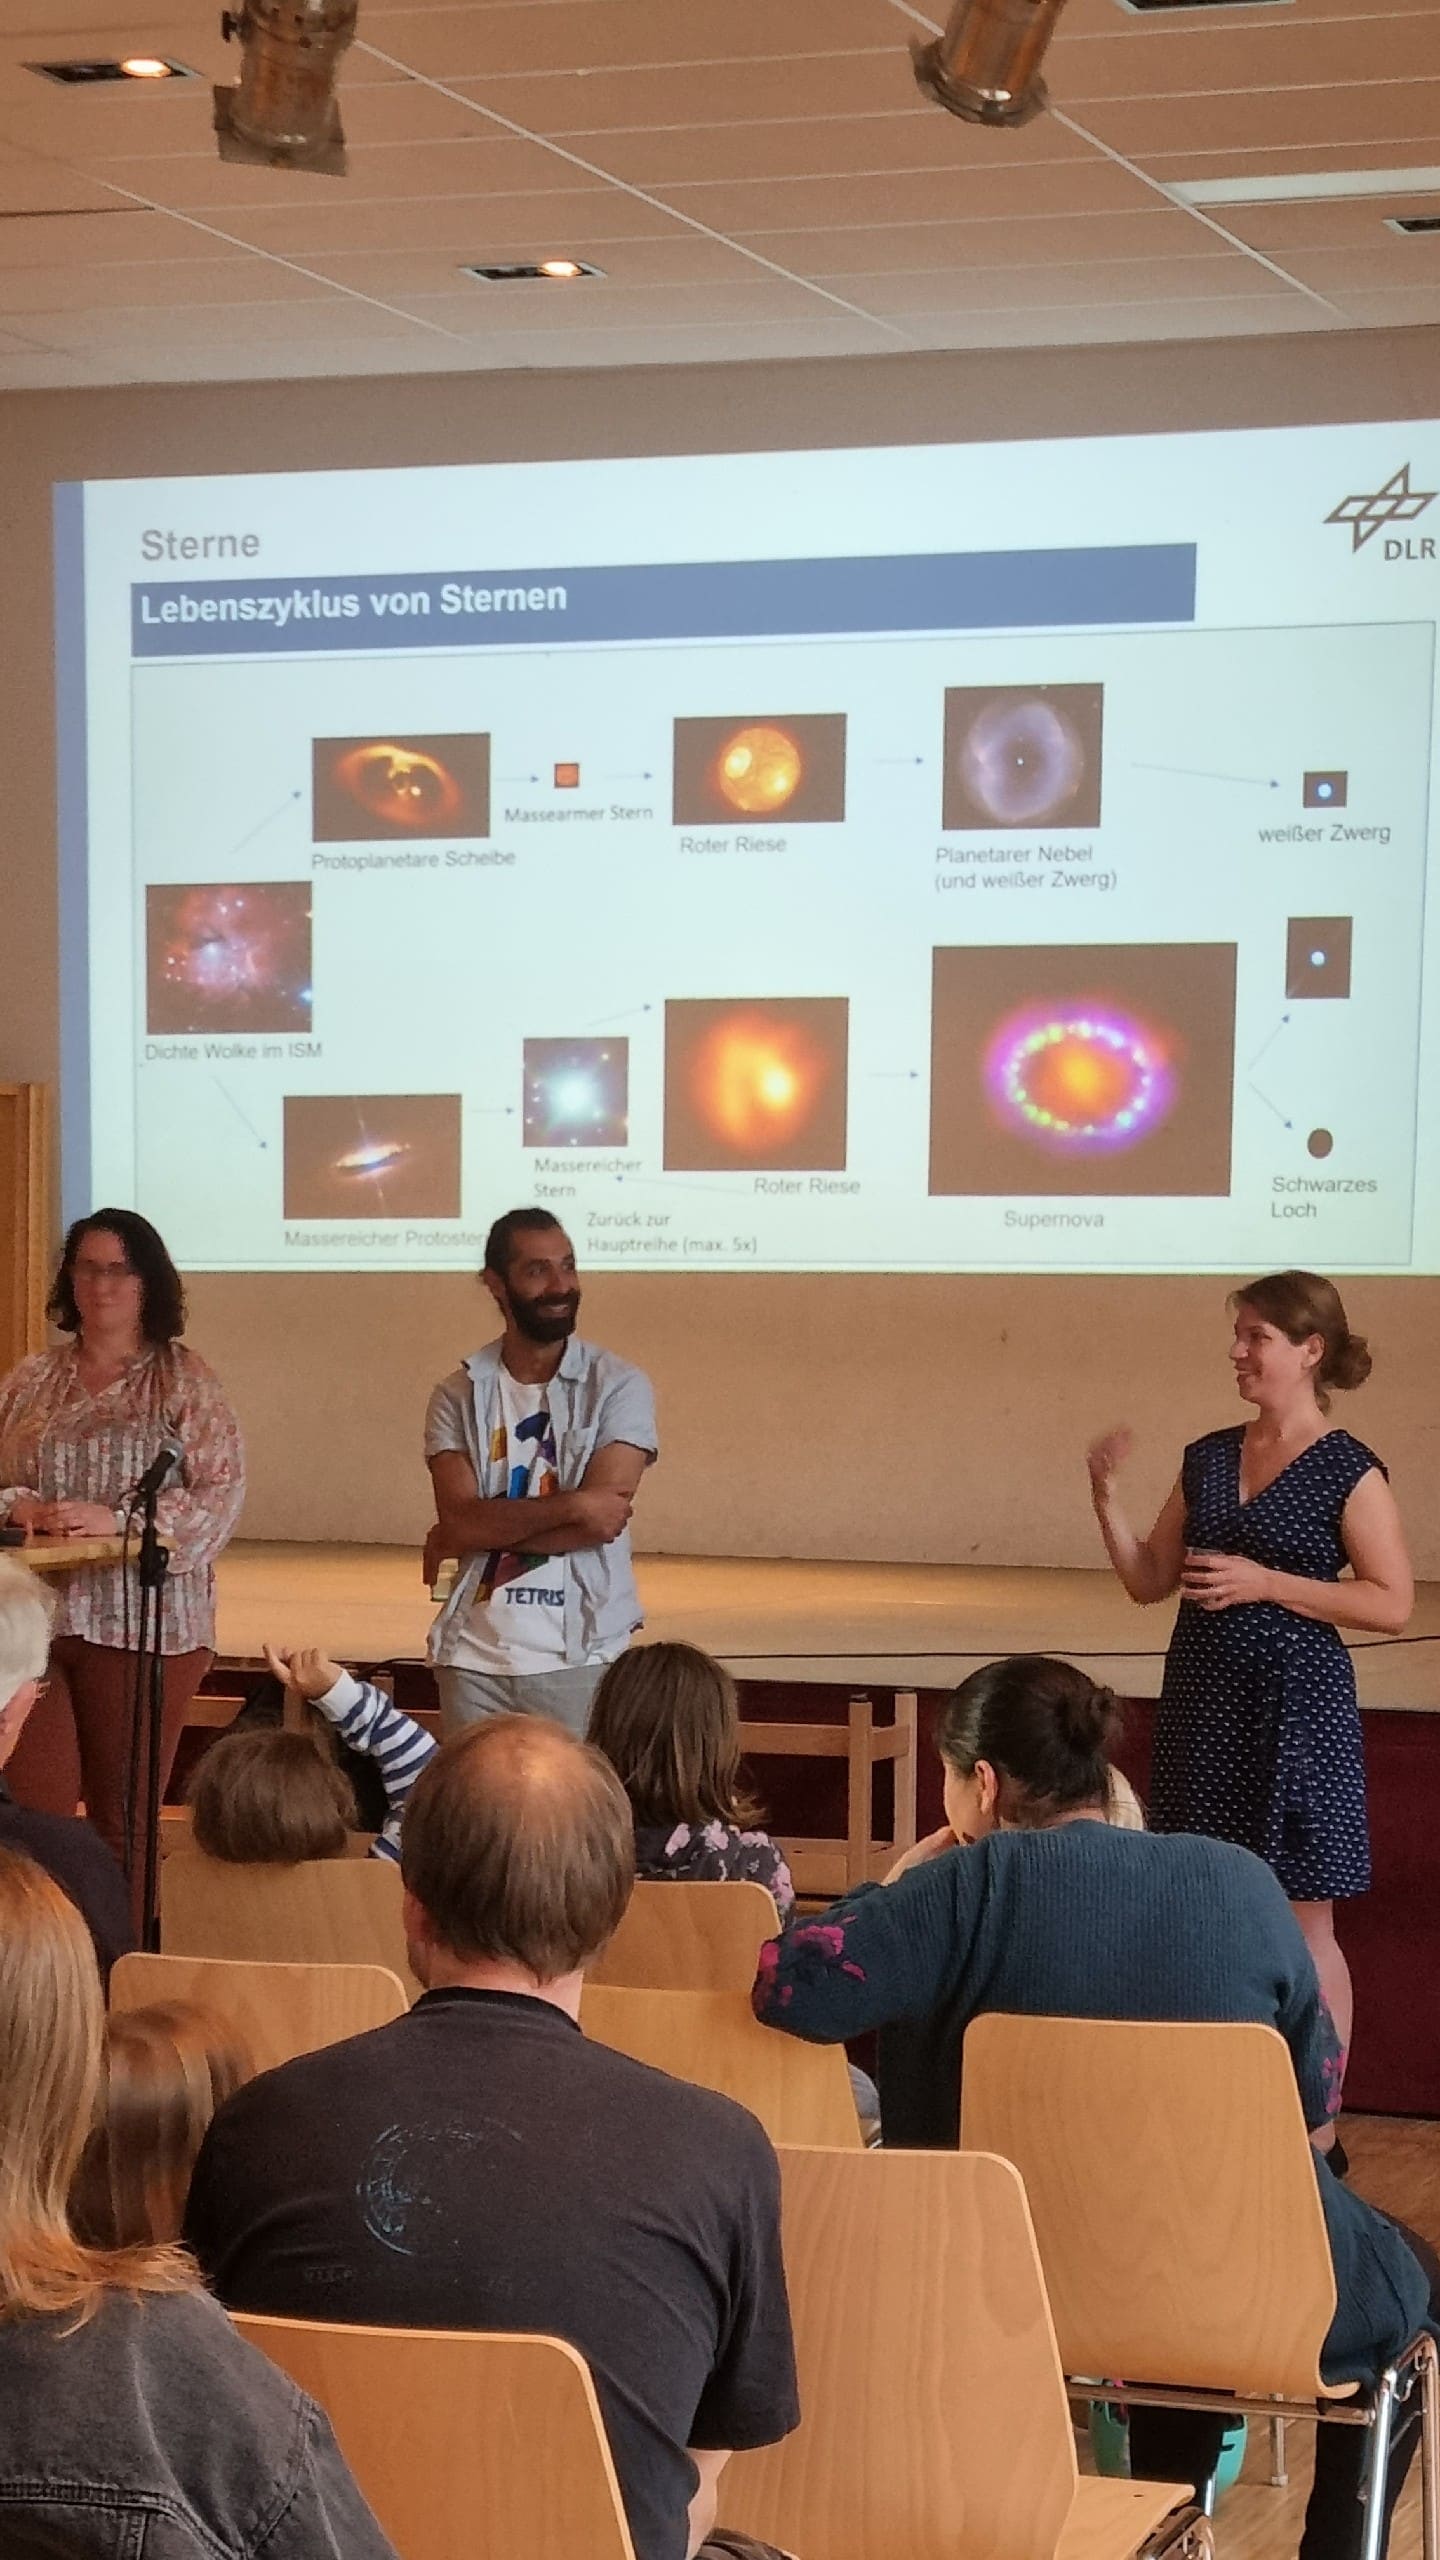 Astro-Vortrag zum Thema "Das Leben der Sterne" von Dr. Rebekka Grellmann, Dr. Saime Gürbüz und Dr. Nadeen Sabha